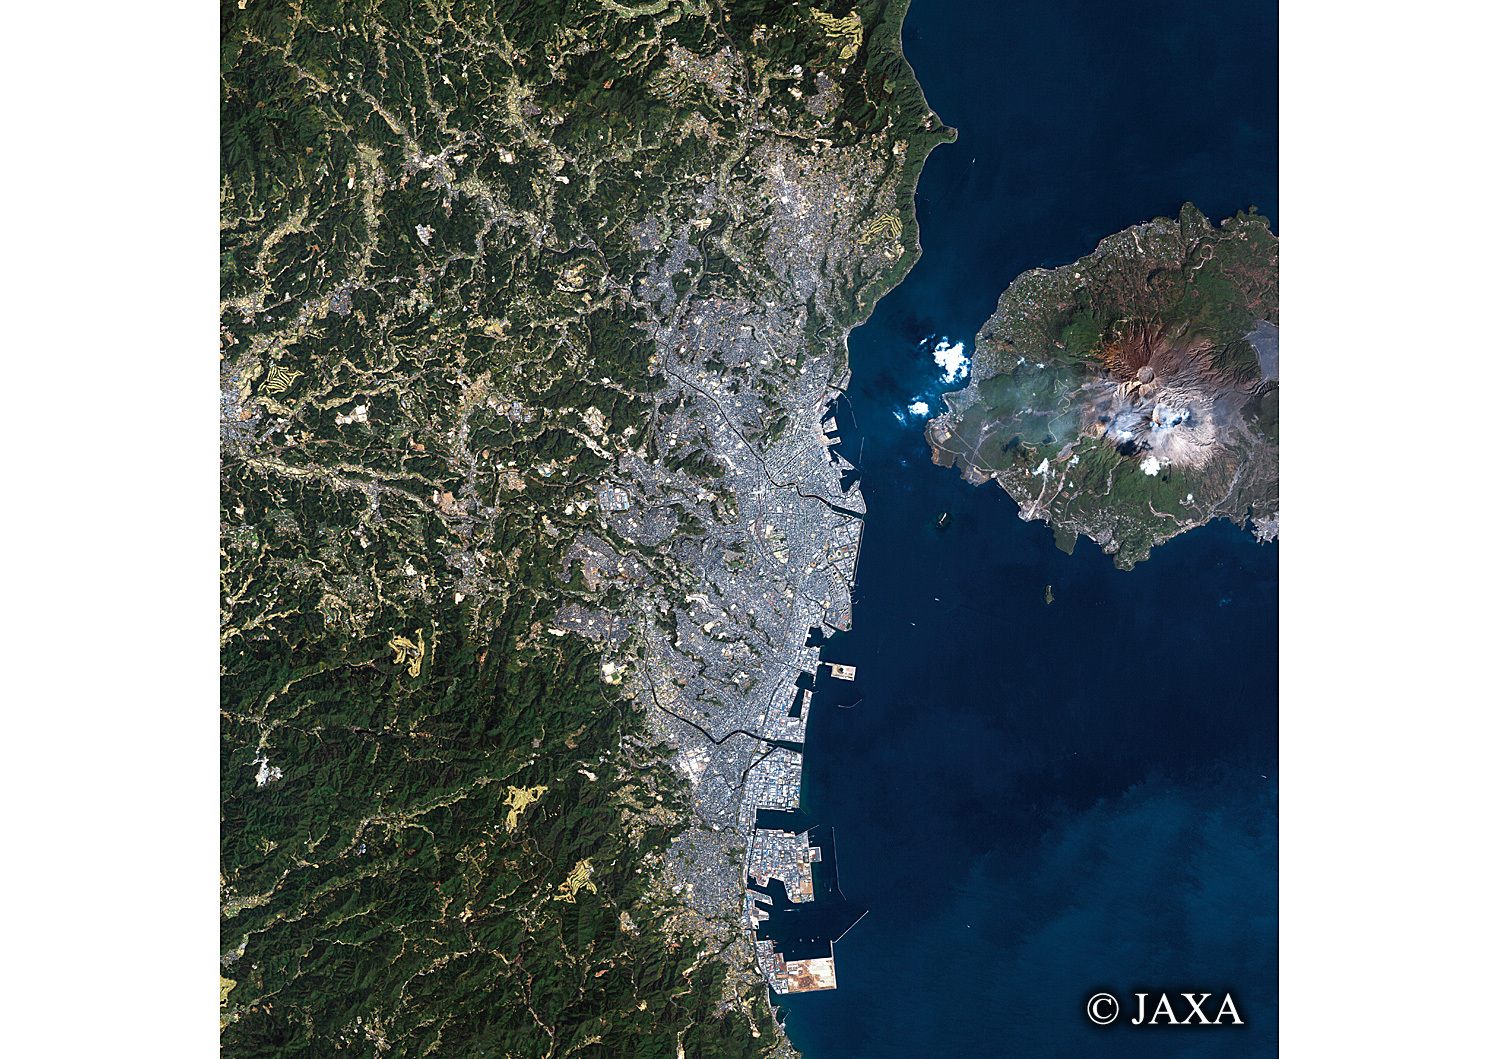 だいちから見た日本の都市 鹿児島市:衛星画像